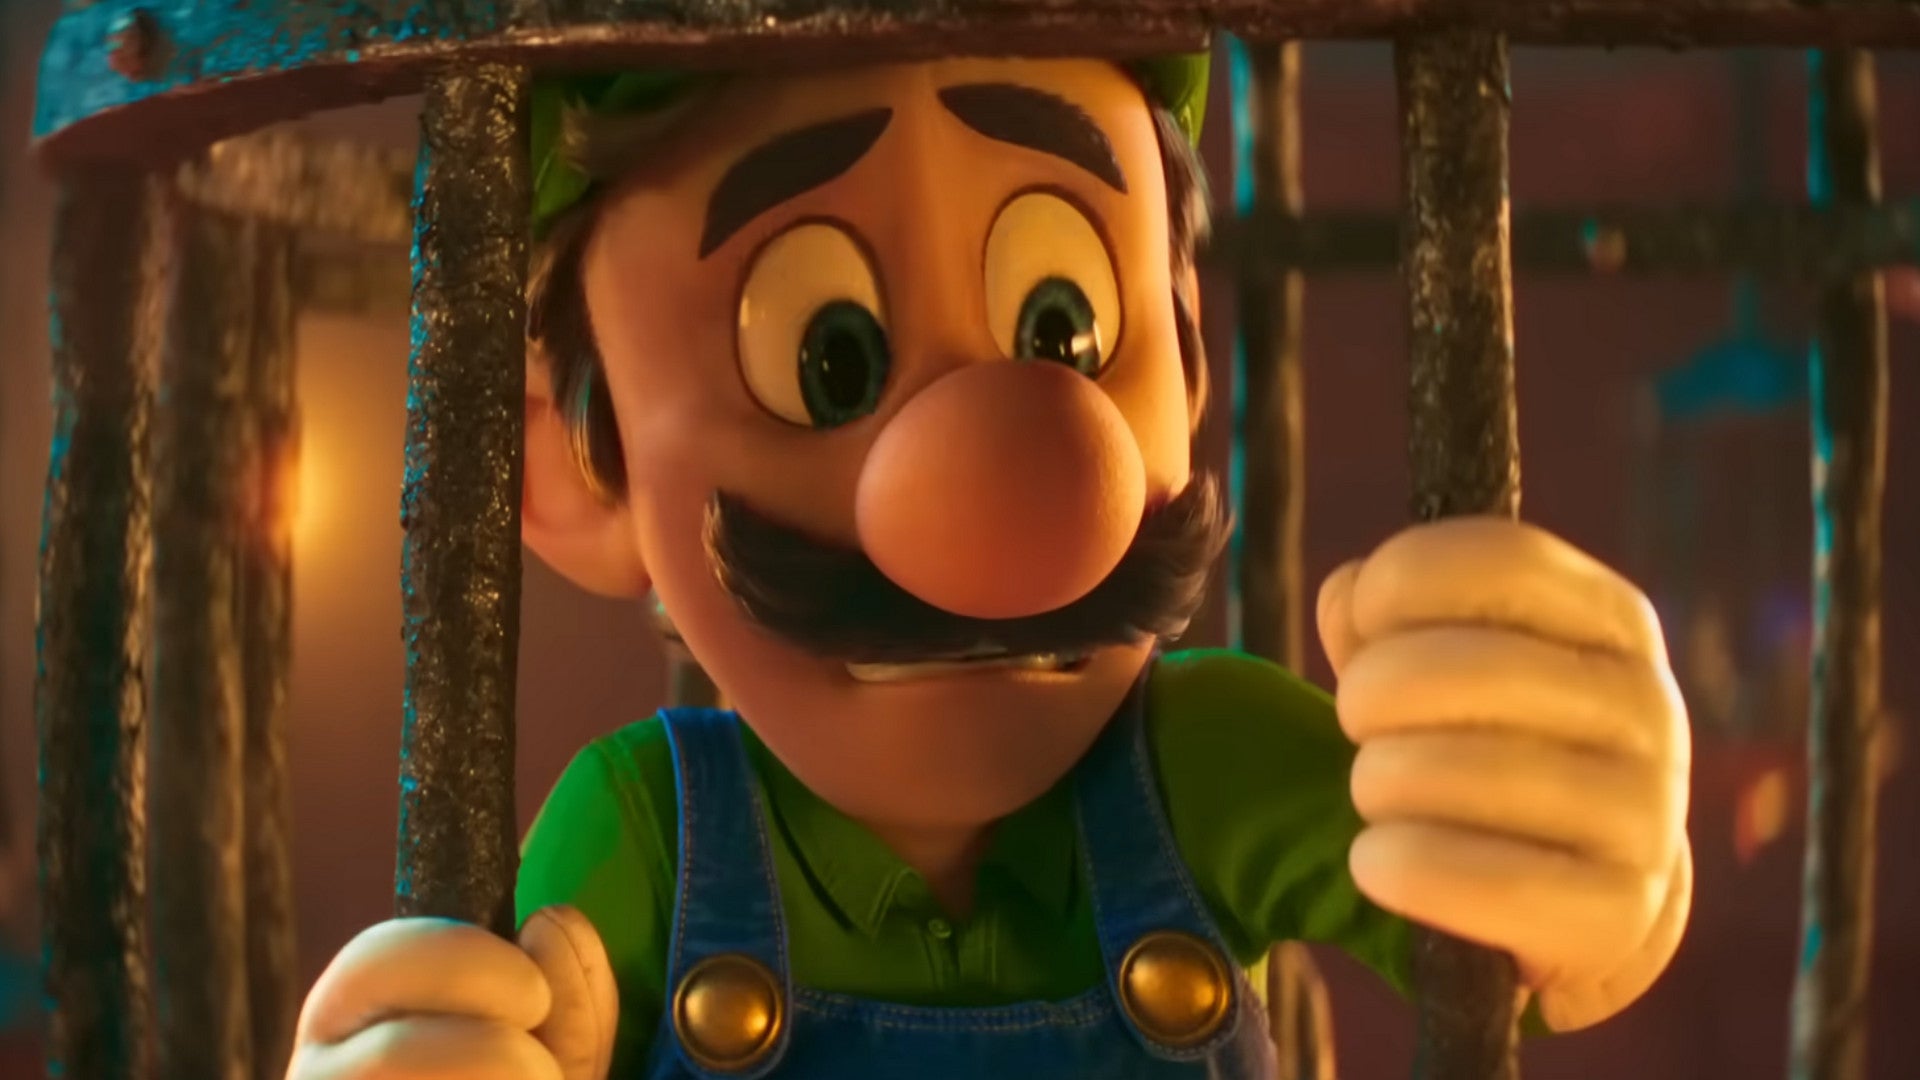 Super Mario Bros Film: Post Credit Szene deutet mögliche Fortsetzung an, sagt Chris Pratt.